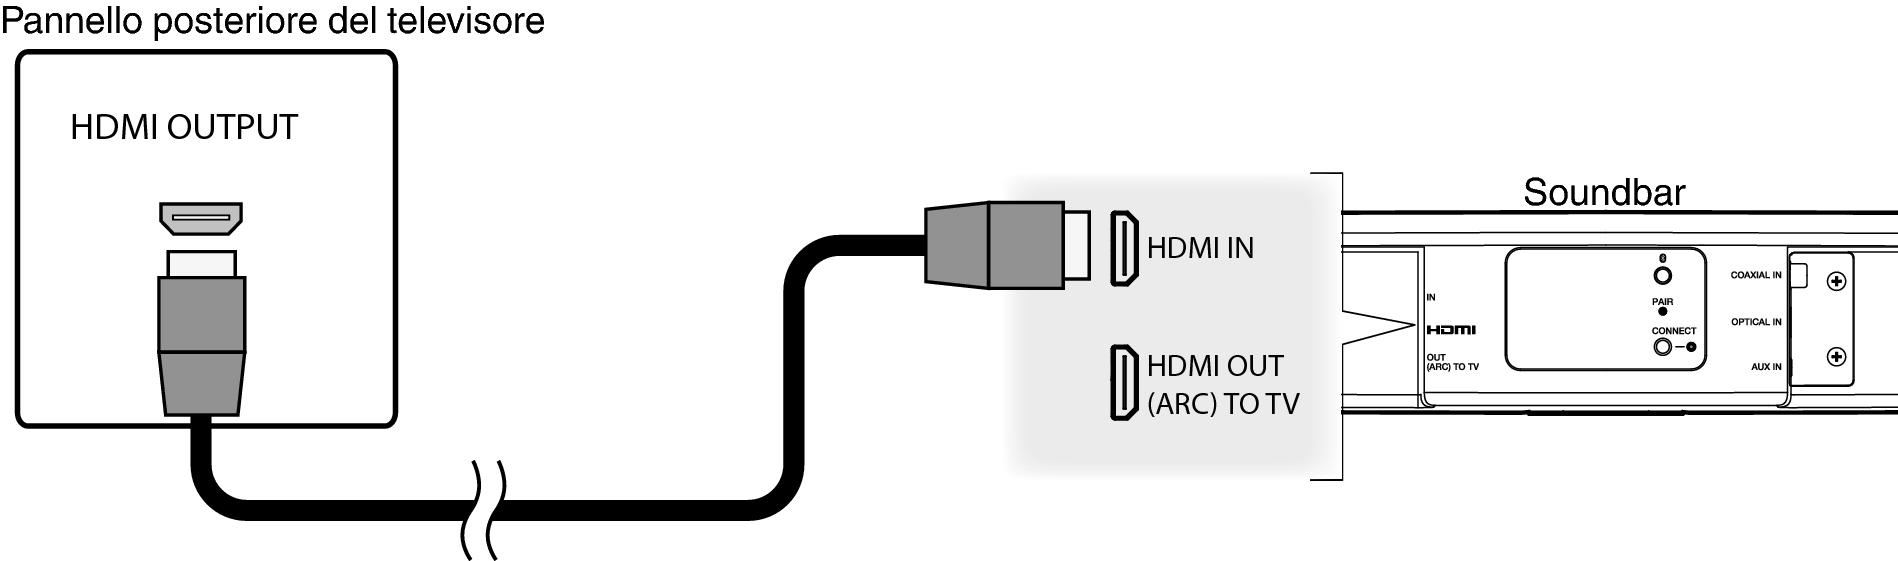 Conne HCHS2 HDMI IN